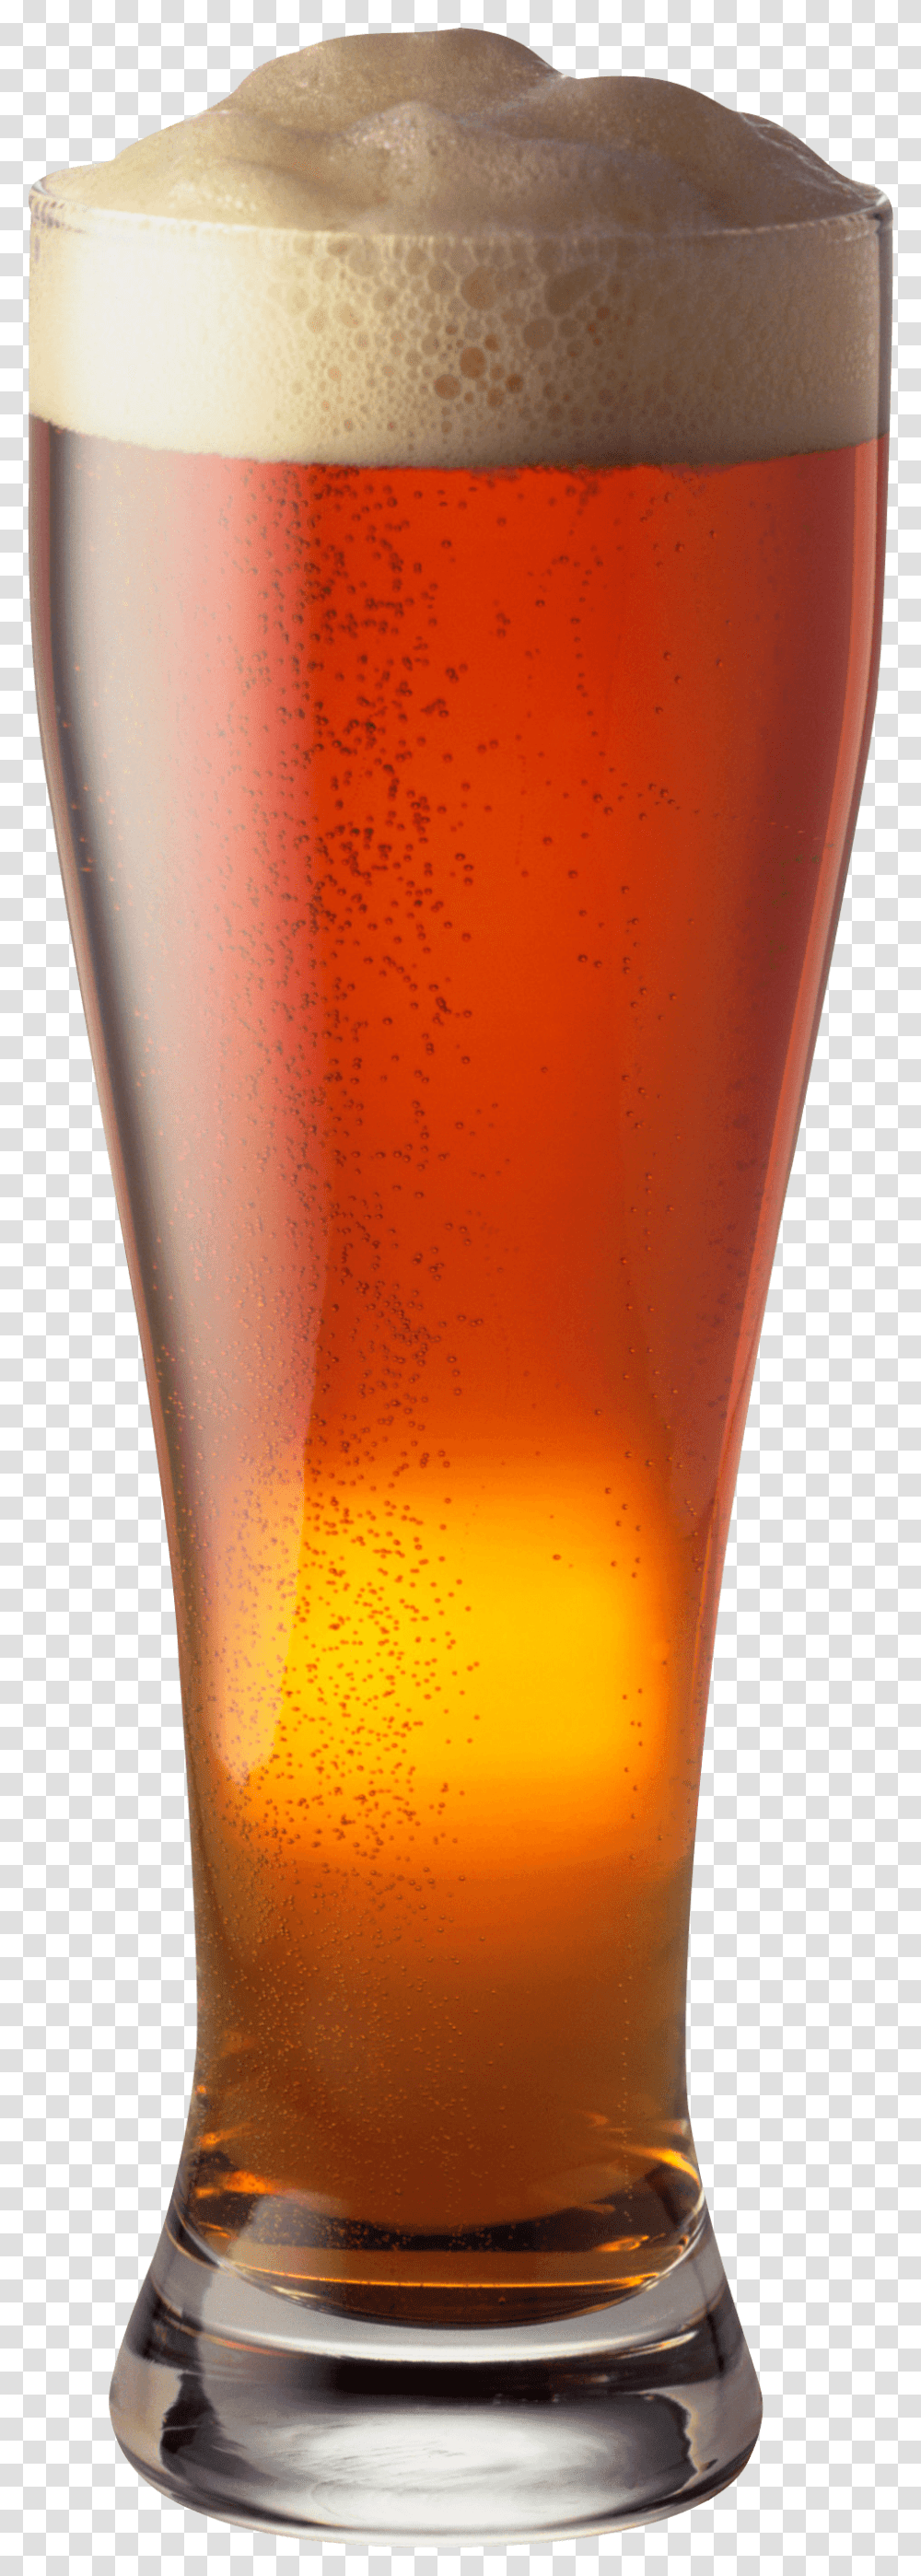 Beer Pale Ale Ale Beer, Glass, Beer Glass, Alcohol, Beverage Transparent Png